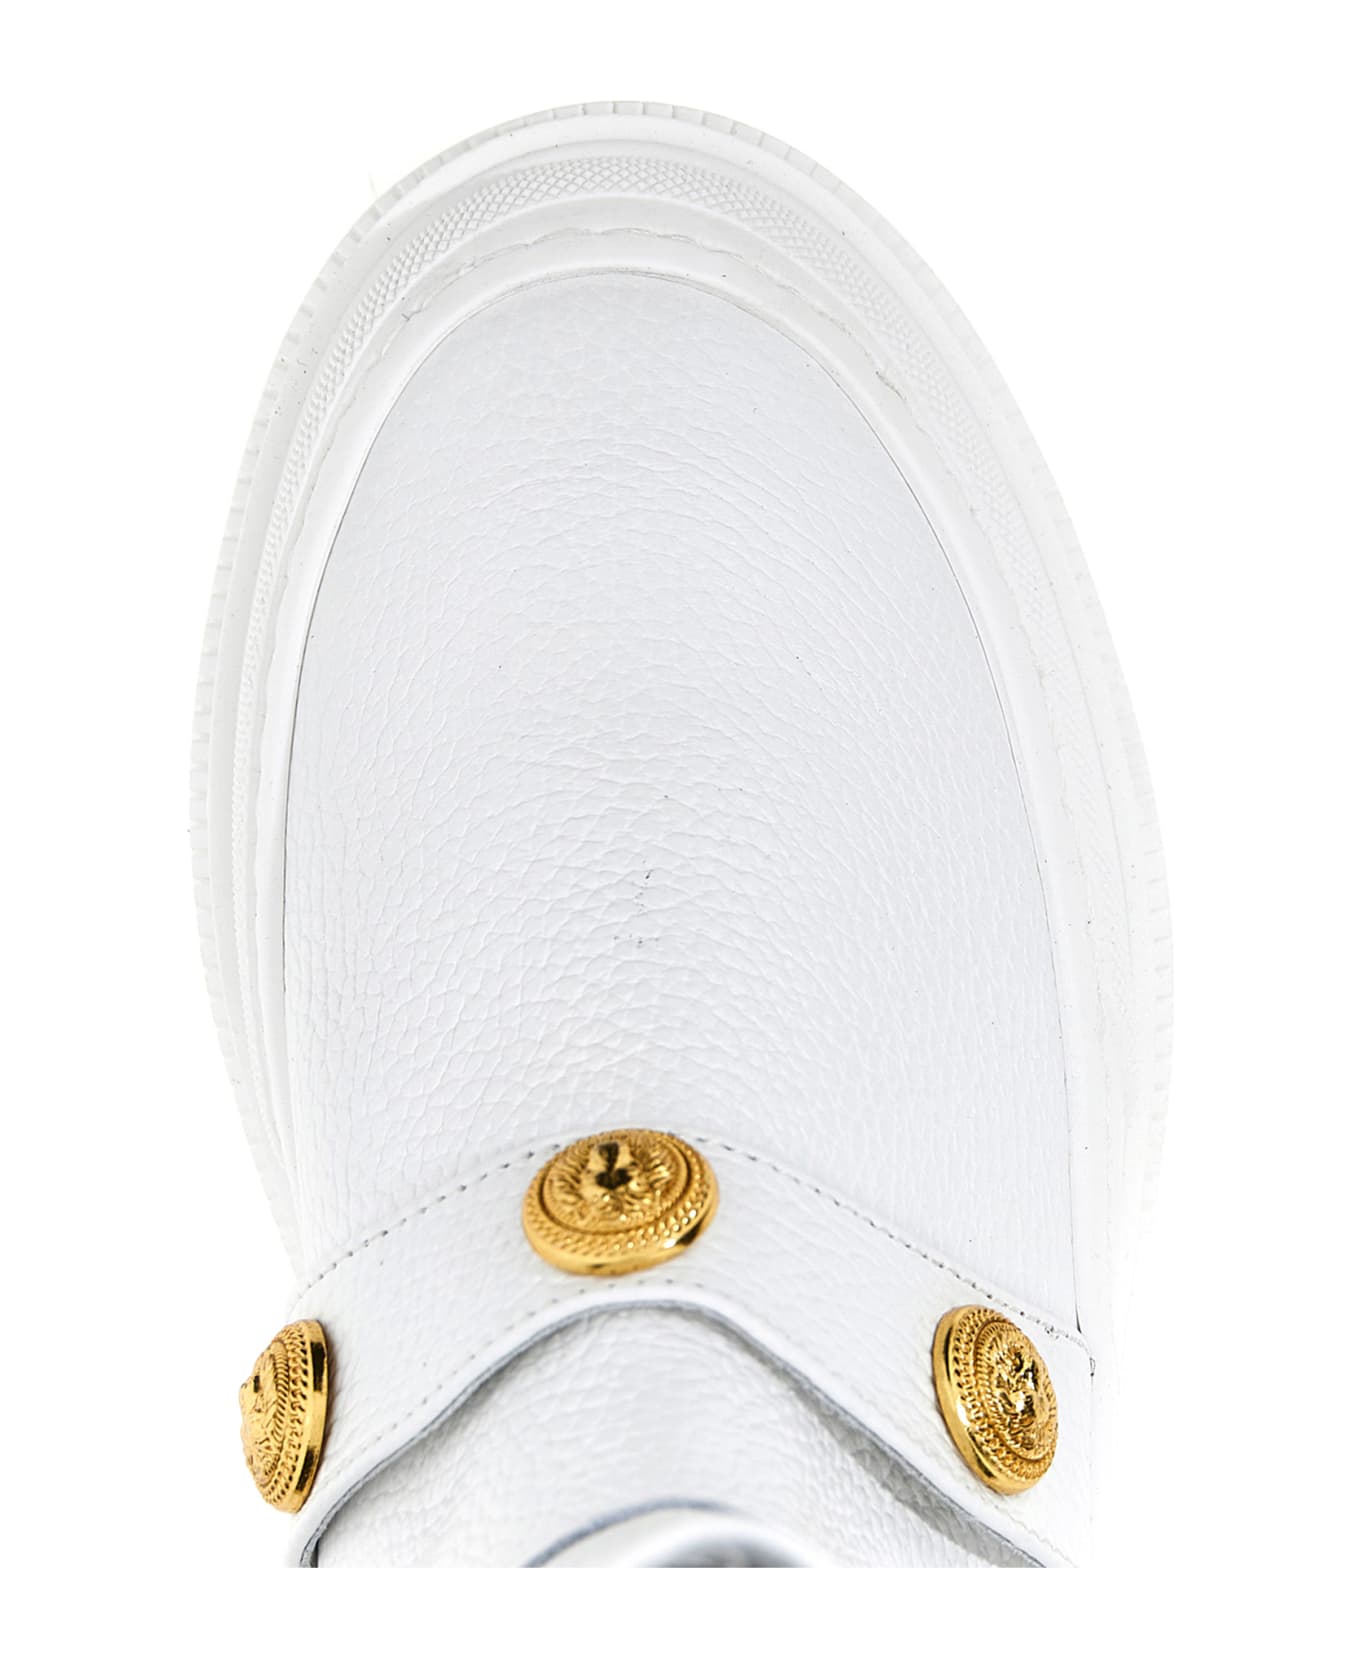 Balmain Logo Button Leather Ankle Boots - White